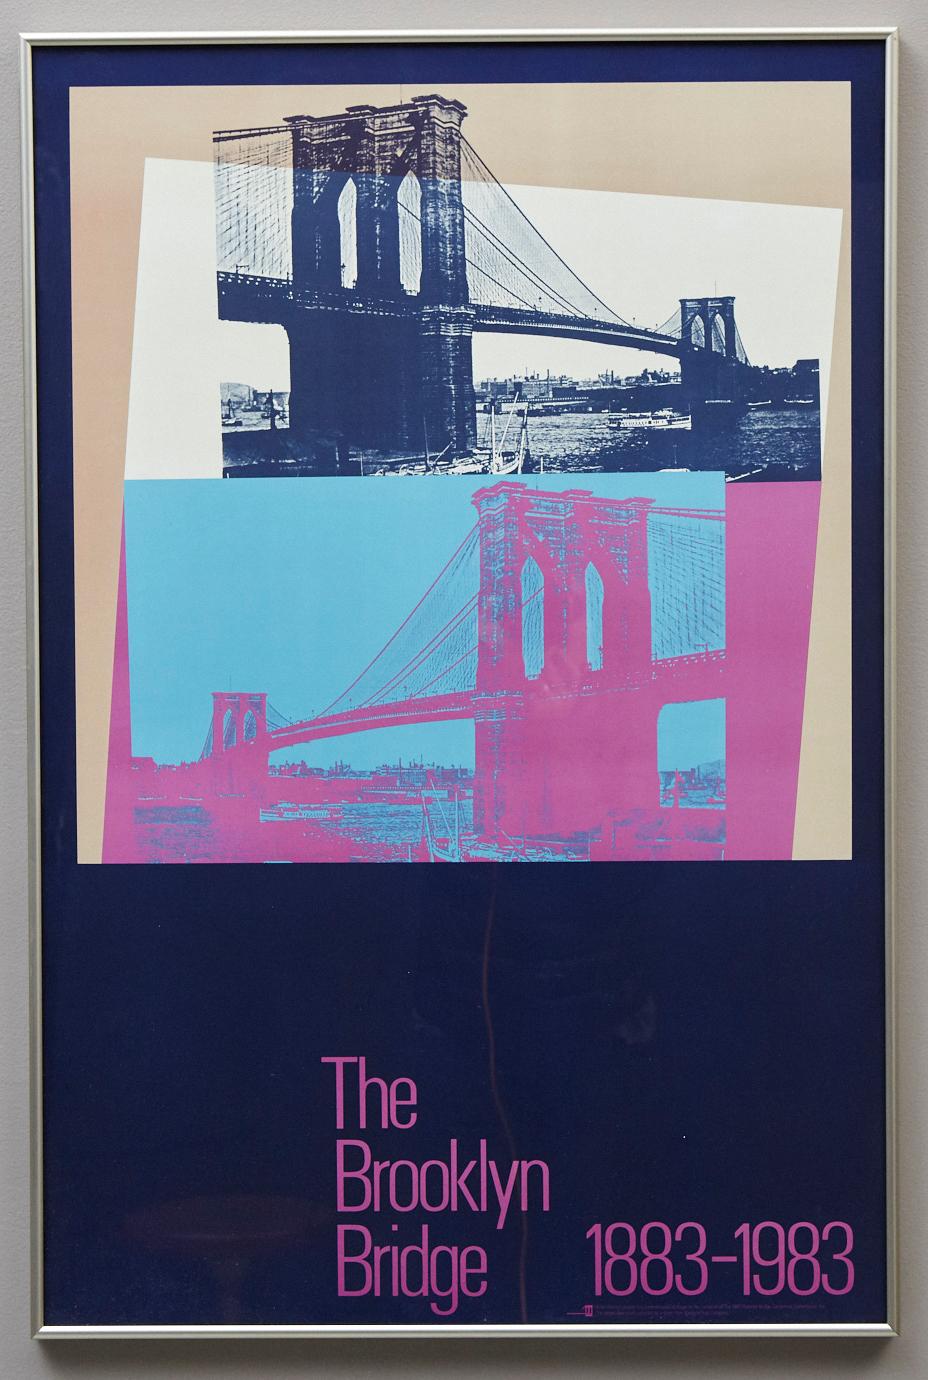 Brooklyn Bridge Centennial 1883 - 1983 - Print by Andy Warhol